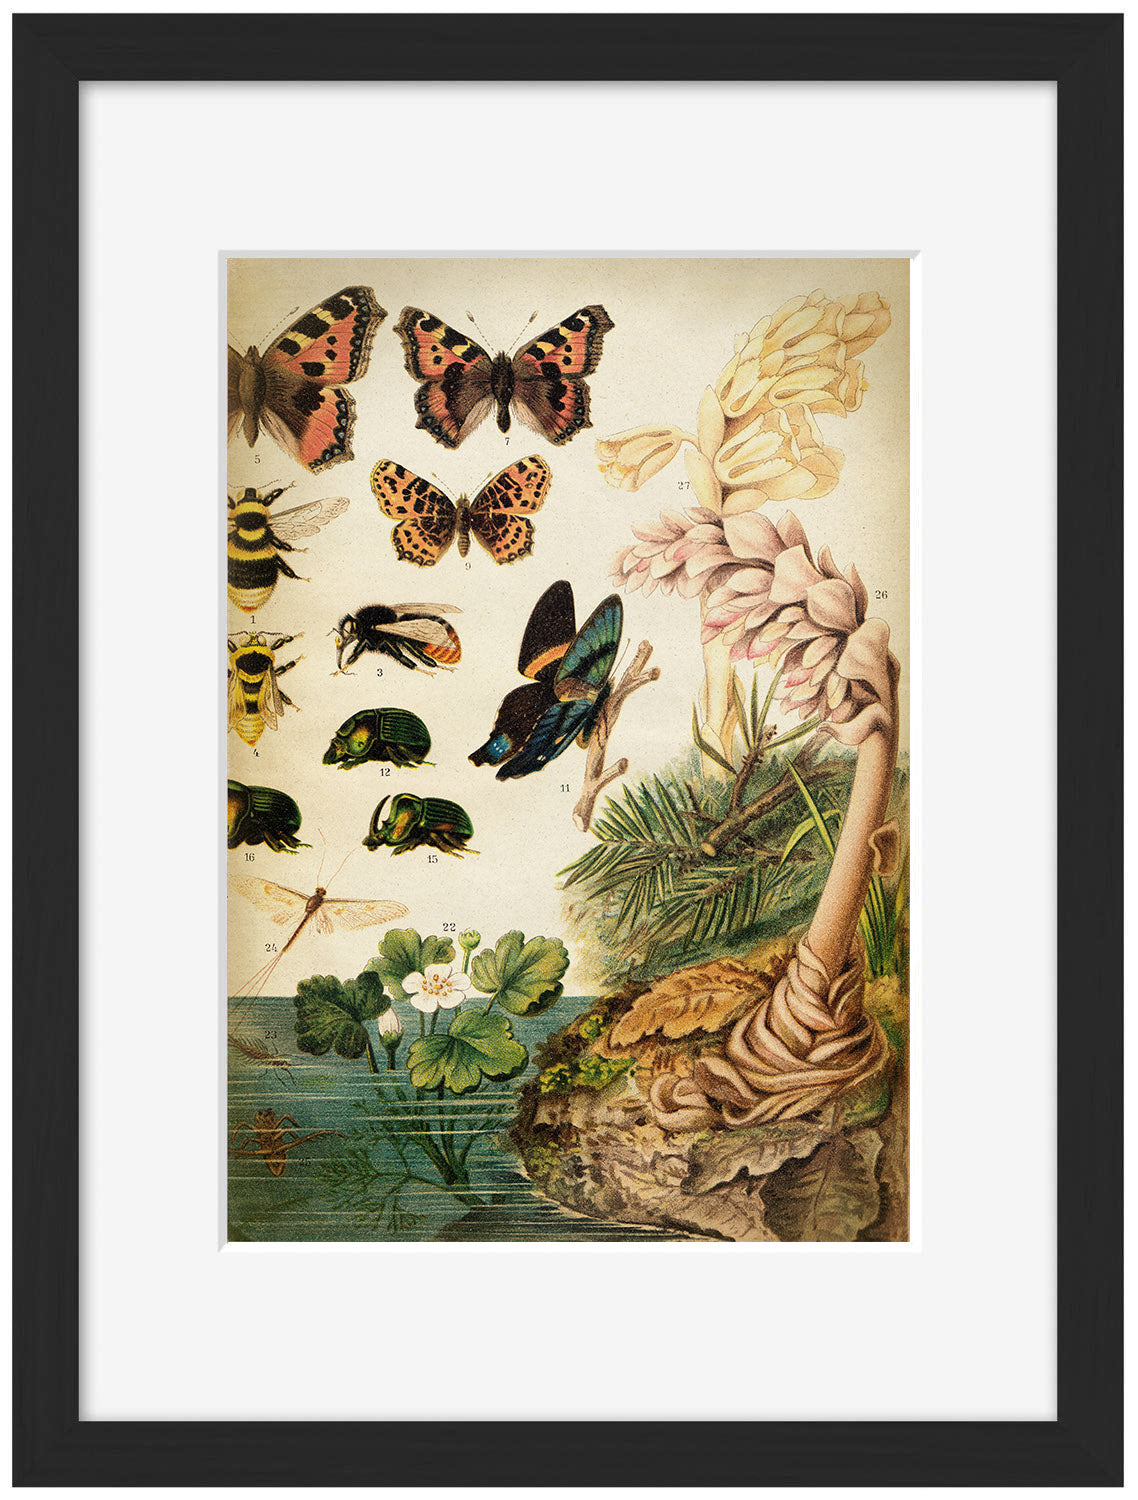 Butterflies Darwinism 2-botanical, print-Framed Print-30 x 40 cm-BLUE SHAKER